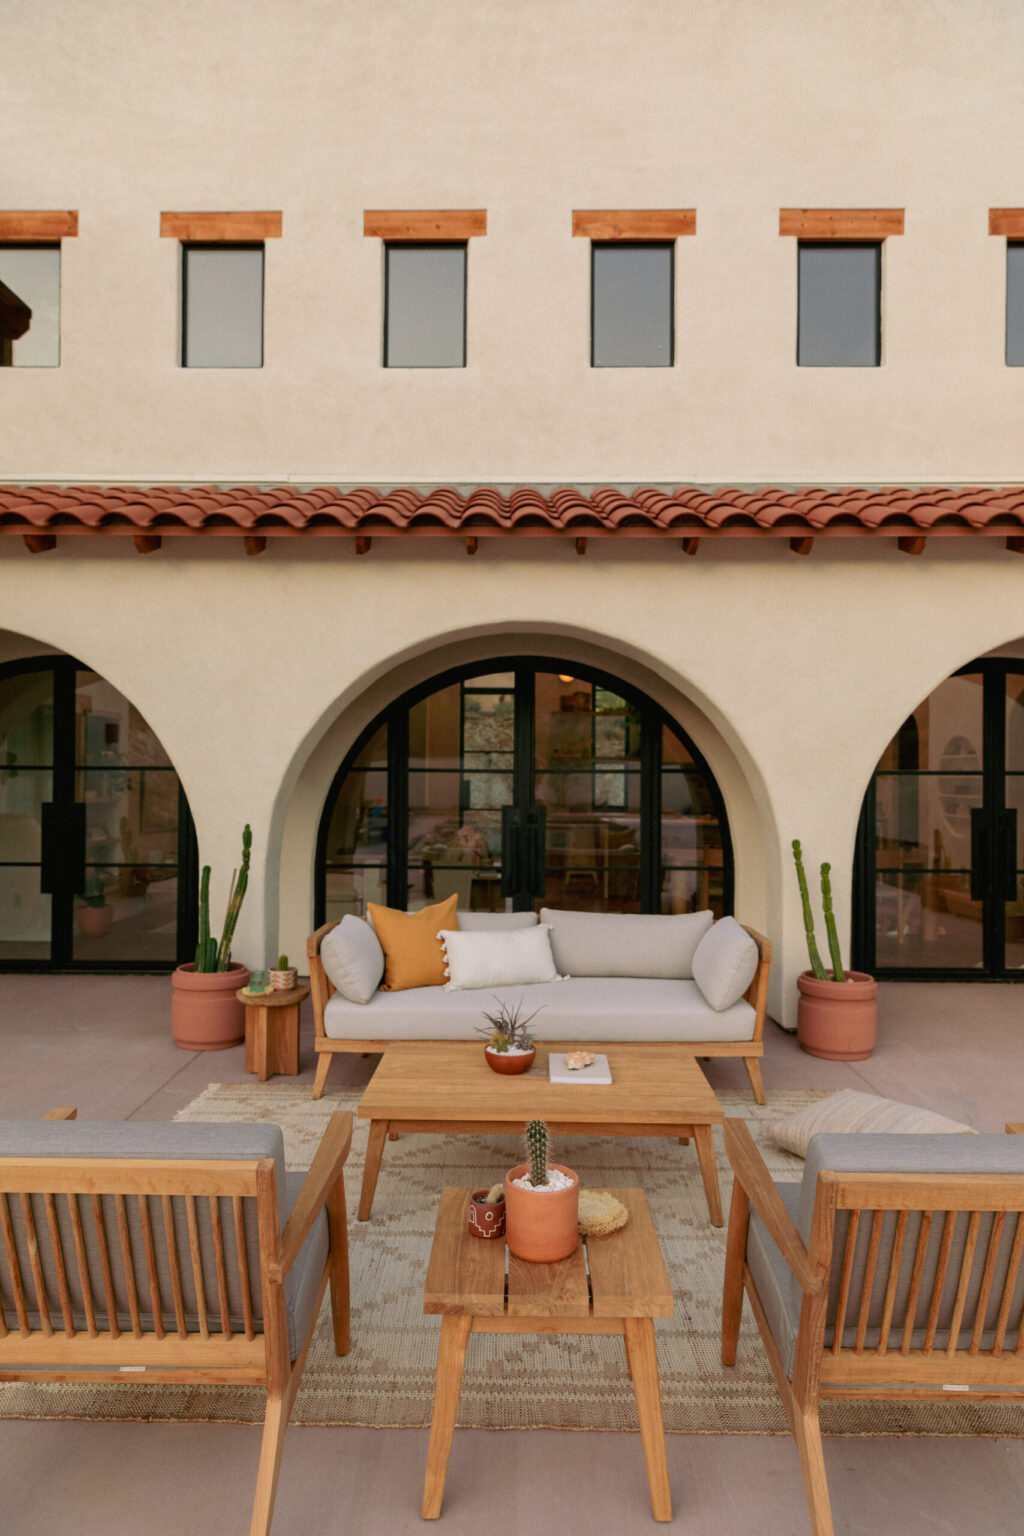 outdoor sofa - outdoor living space - summer patio ideas - desert patio